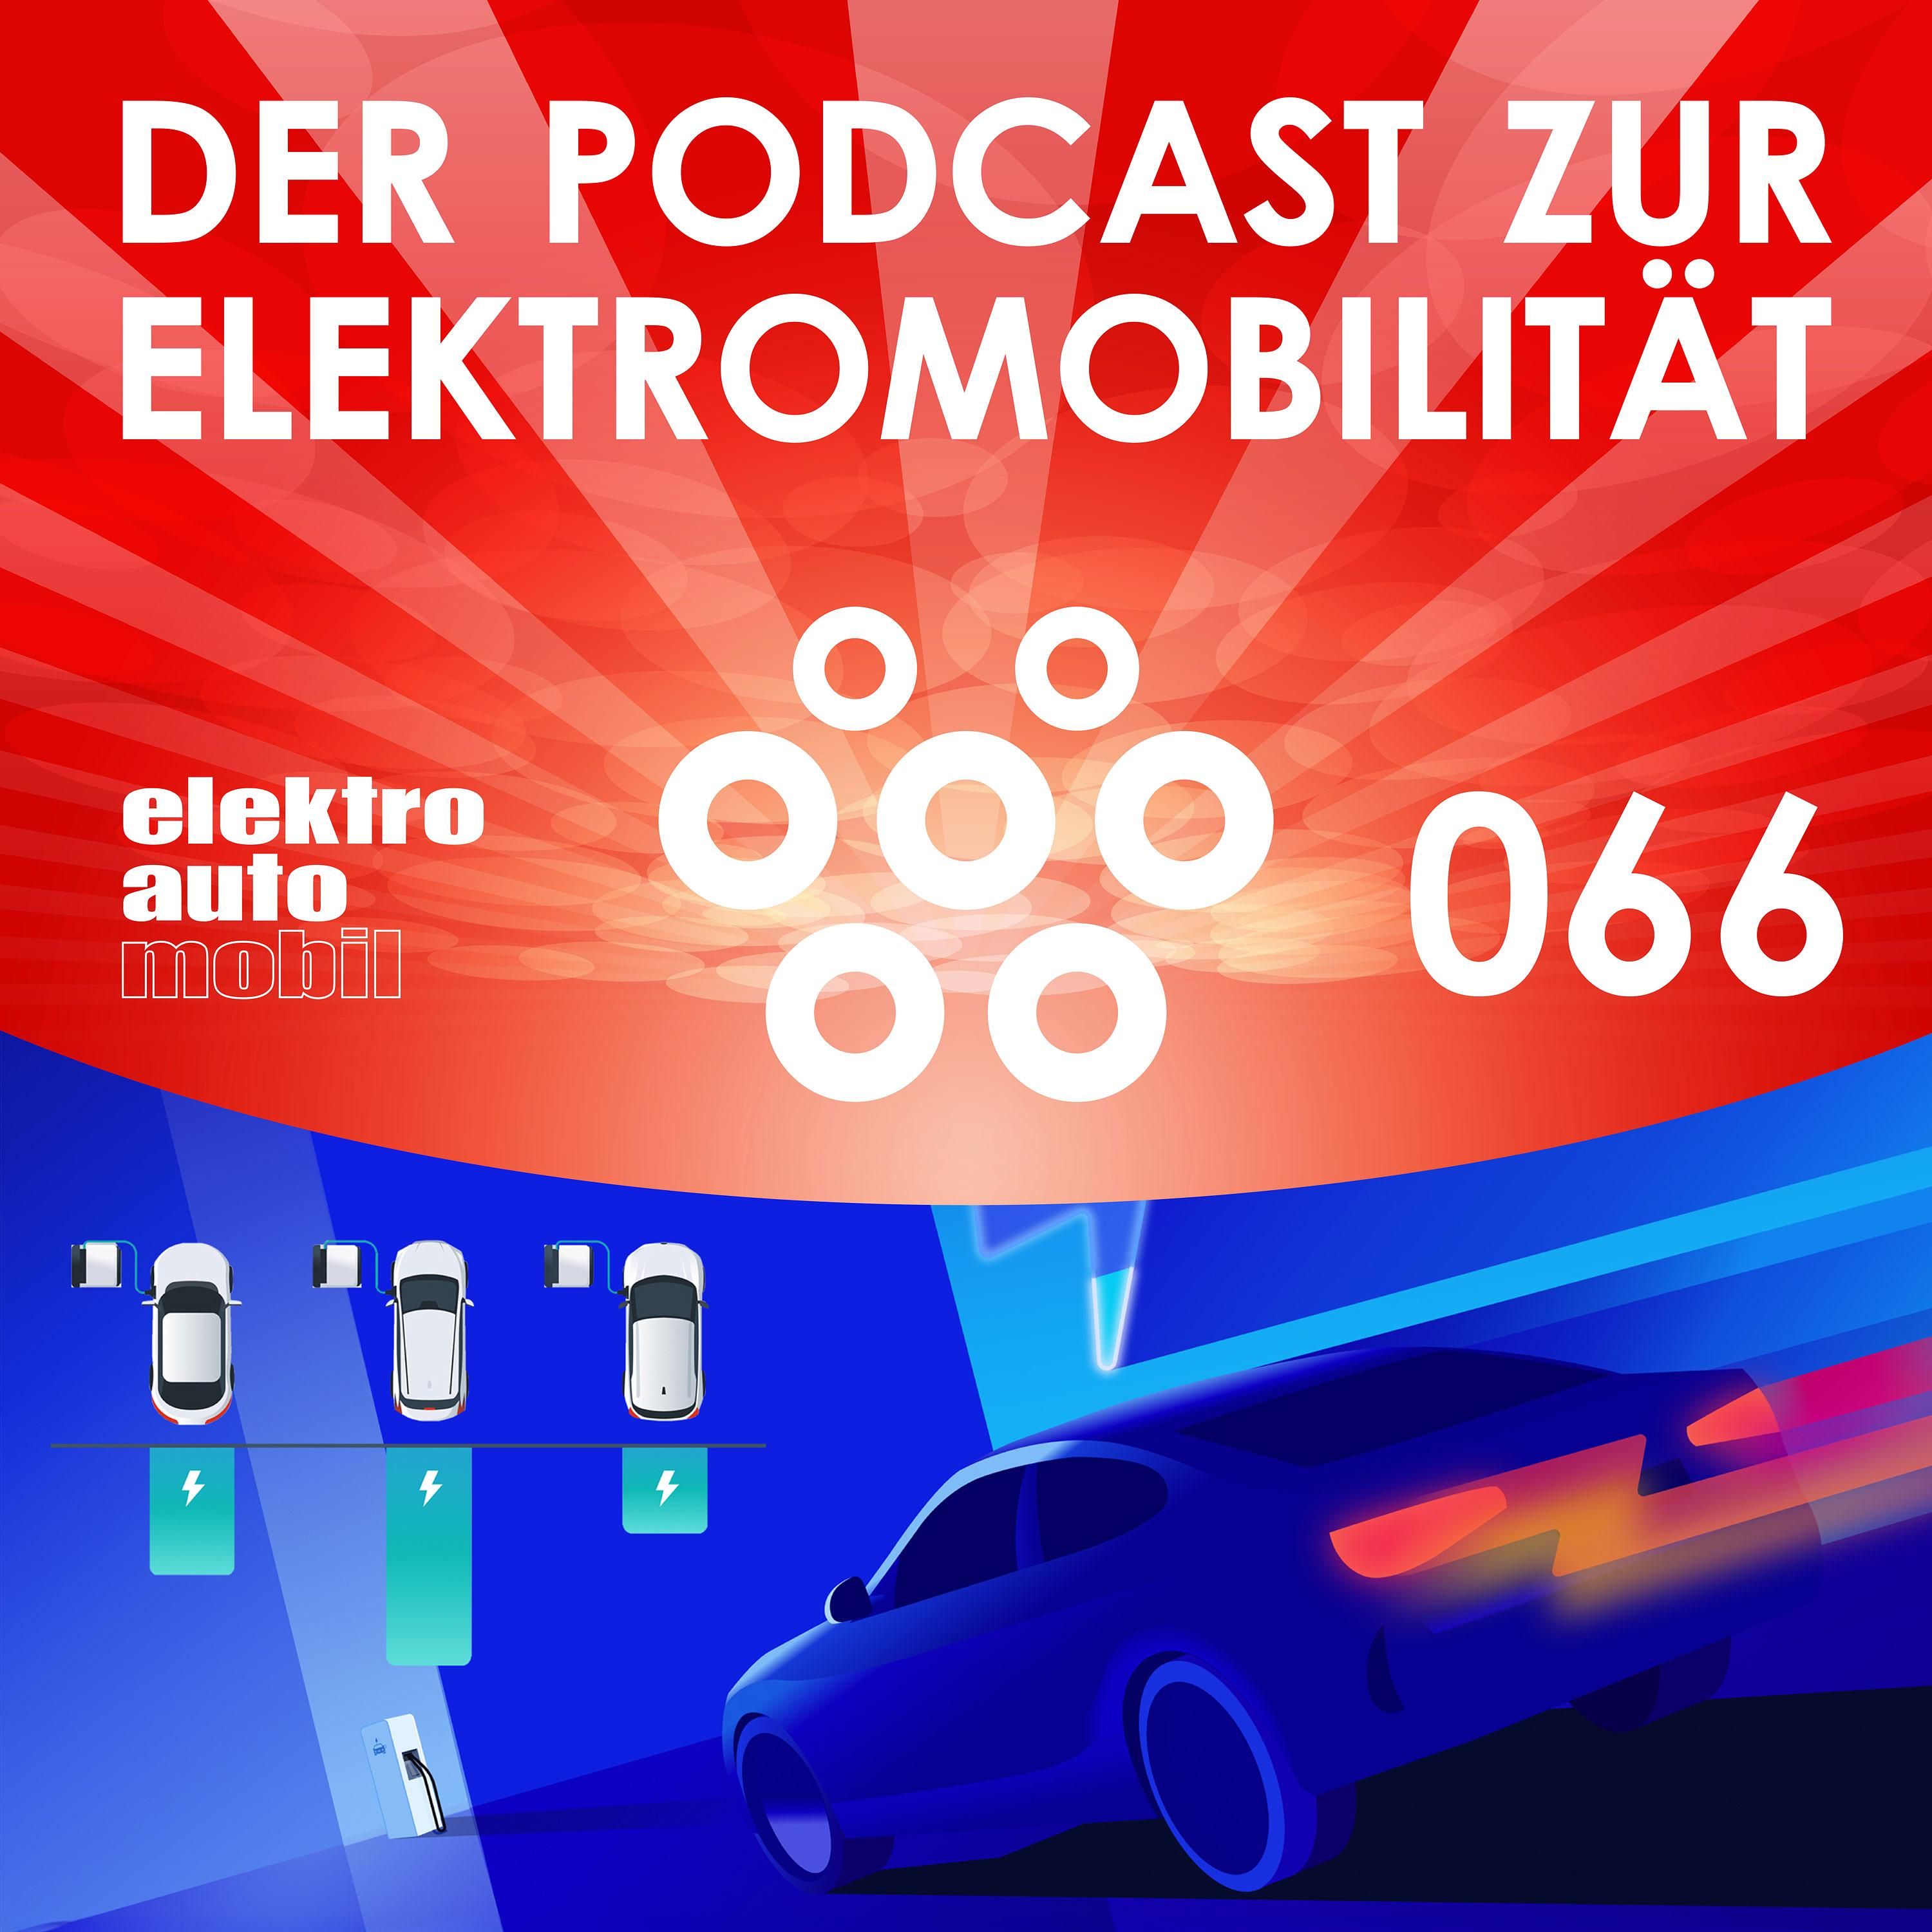 Elektroautomobil, Der Podcast zur Elektromobilität